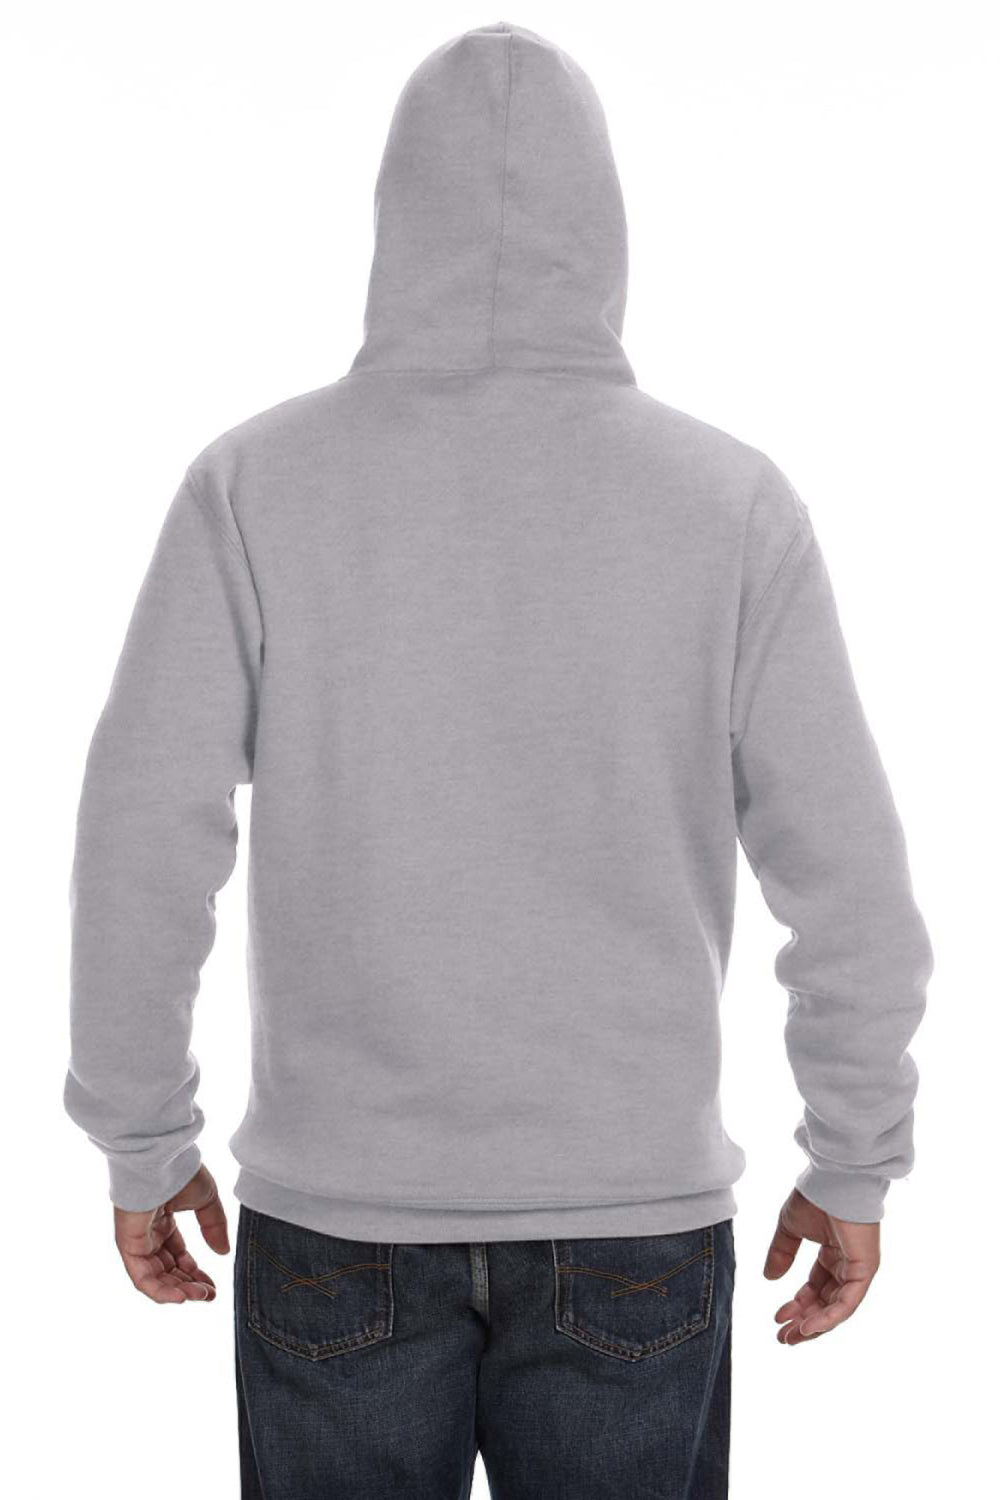 J America JA8824 Mens Premium Fleece Hooded Sweatshirt Hoodie Oxford Grey Back